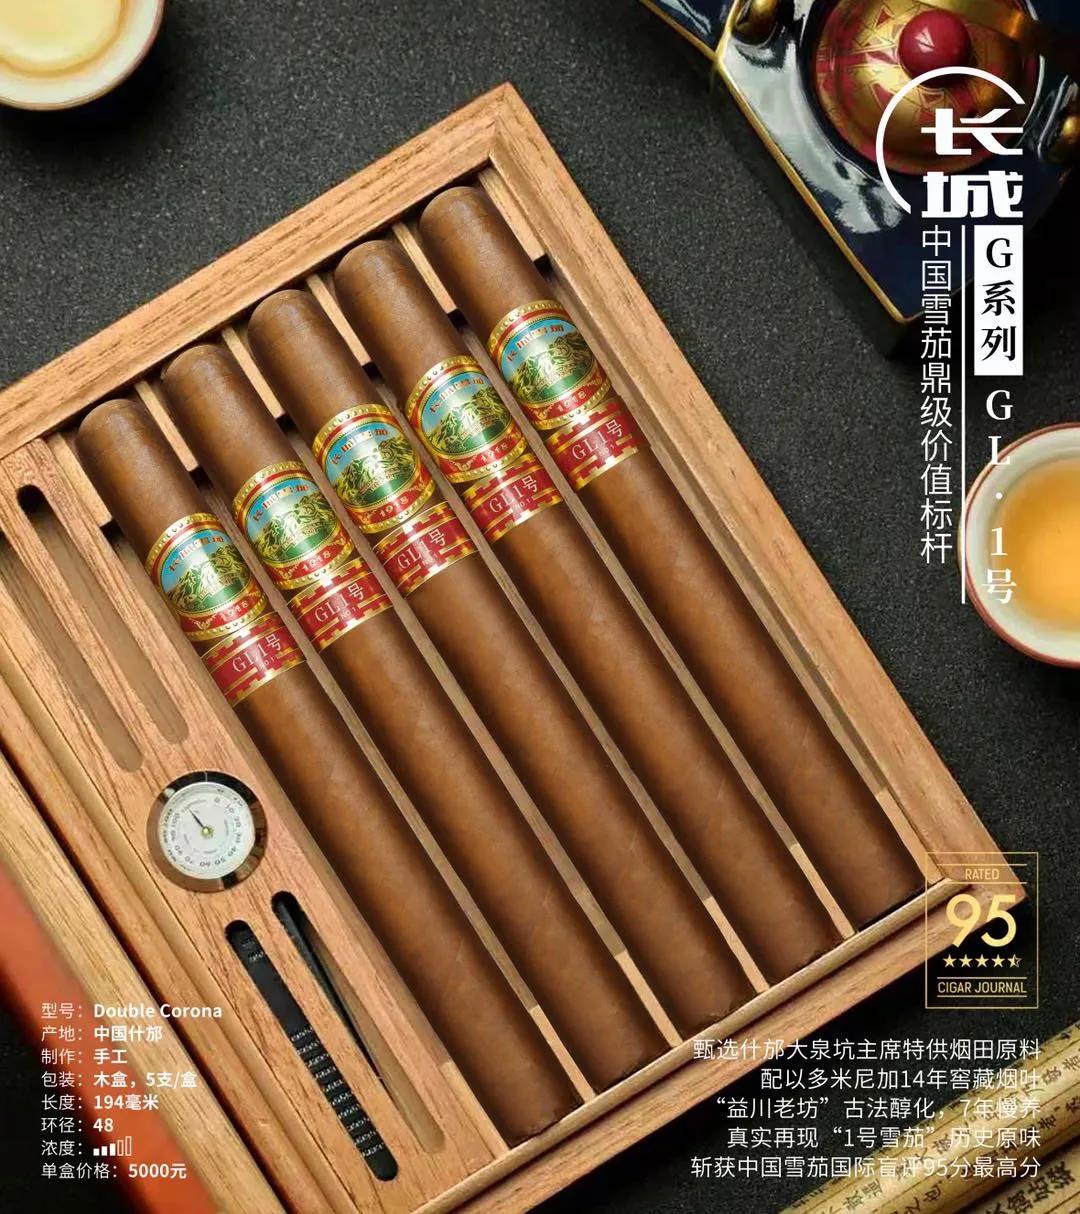 长城手工雪茄有g系列,132系列,盛世系列三大系列产品.